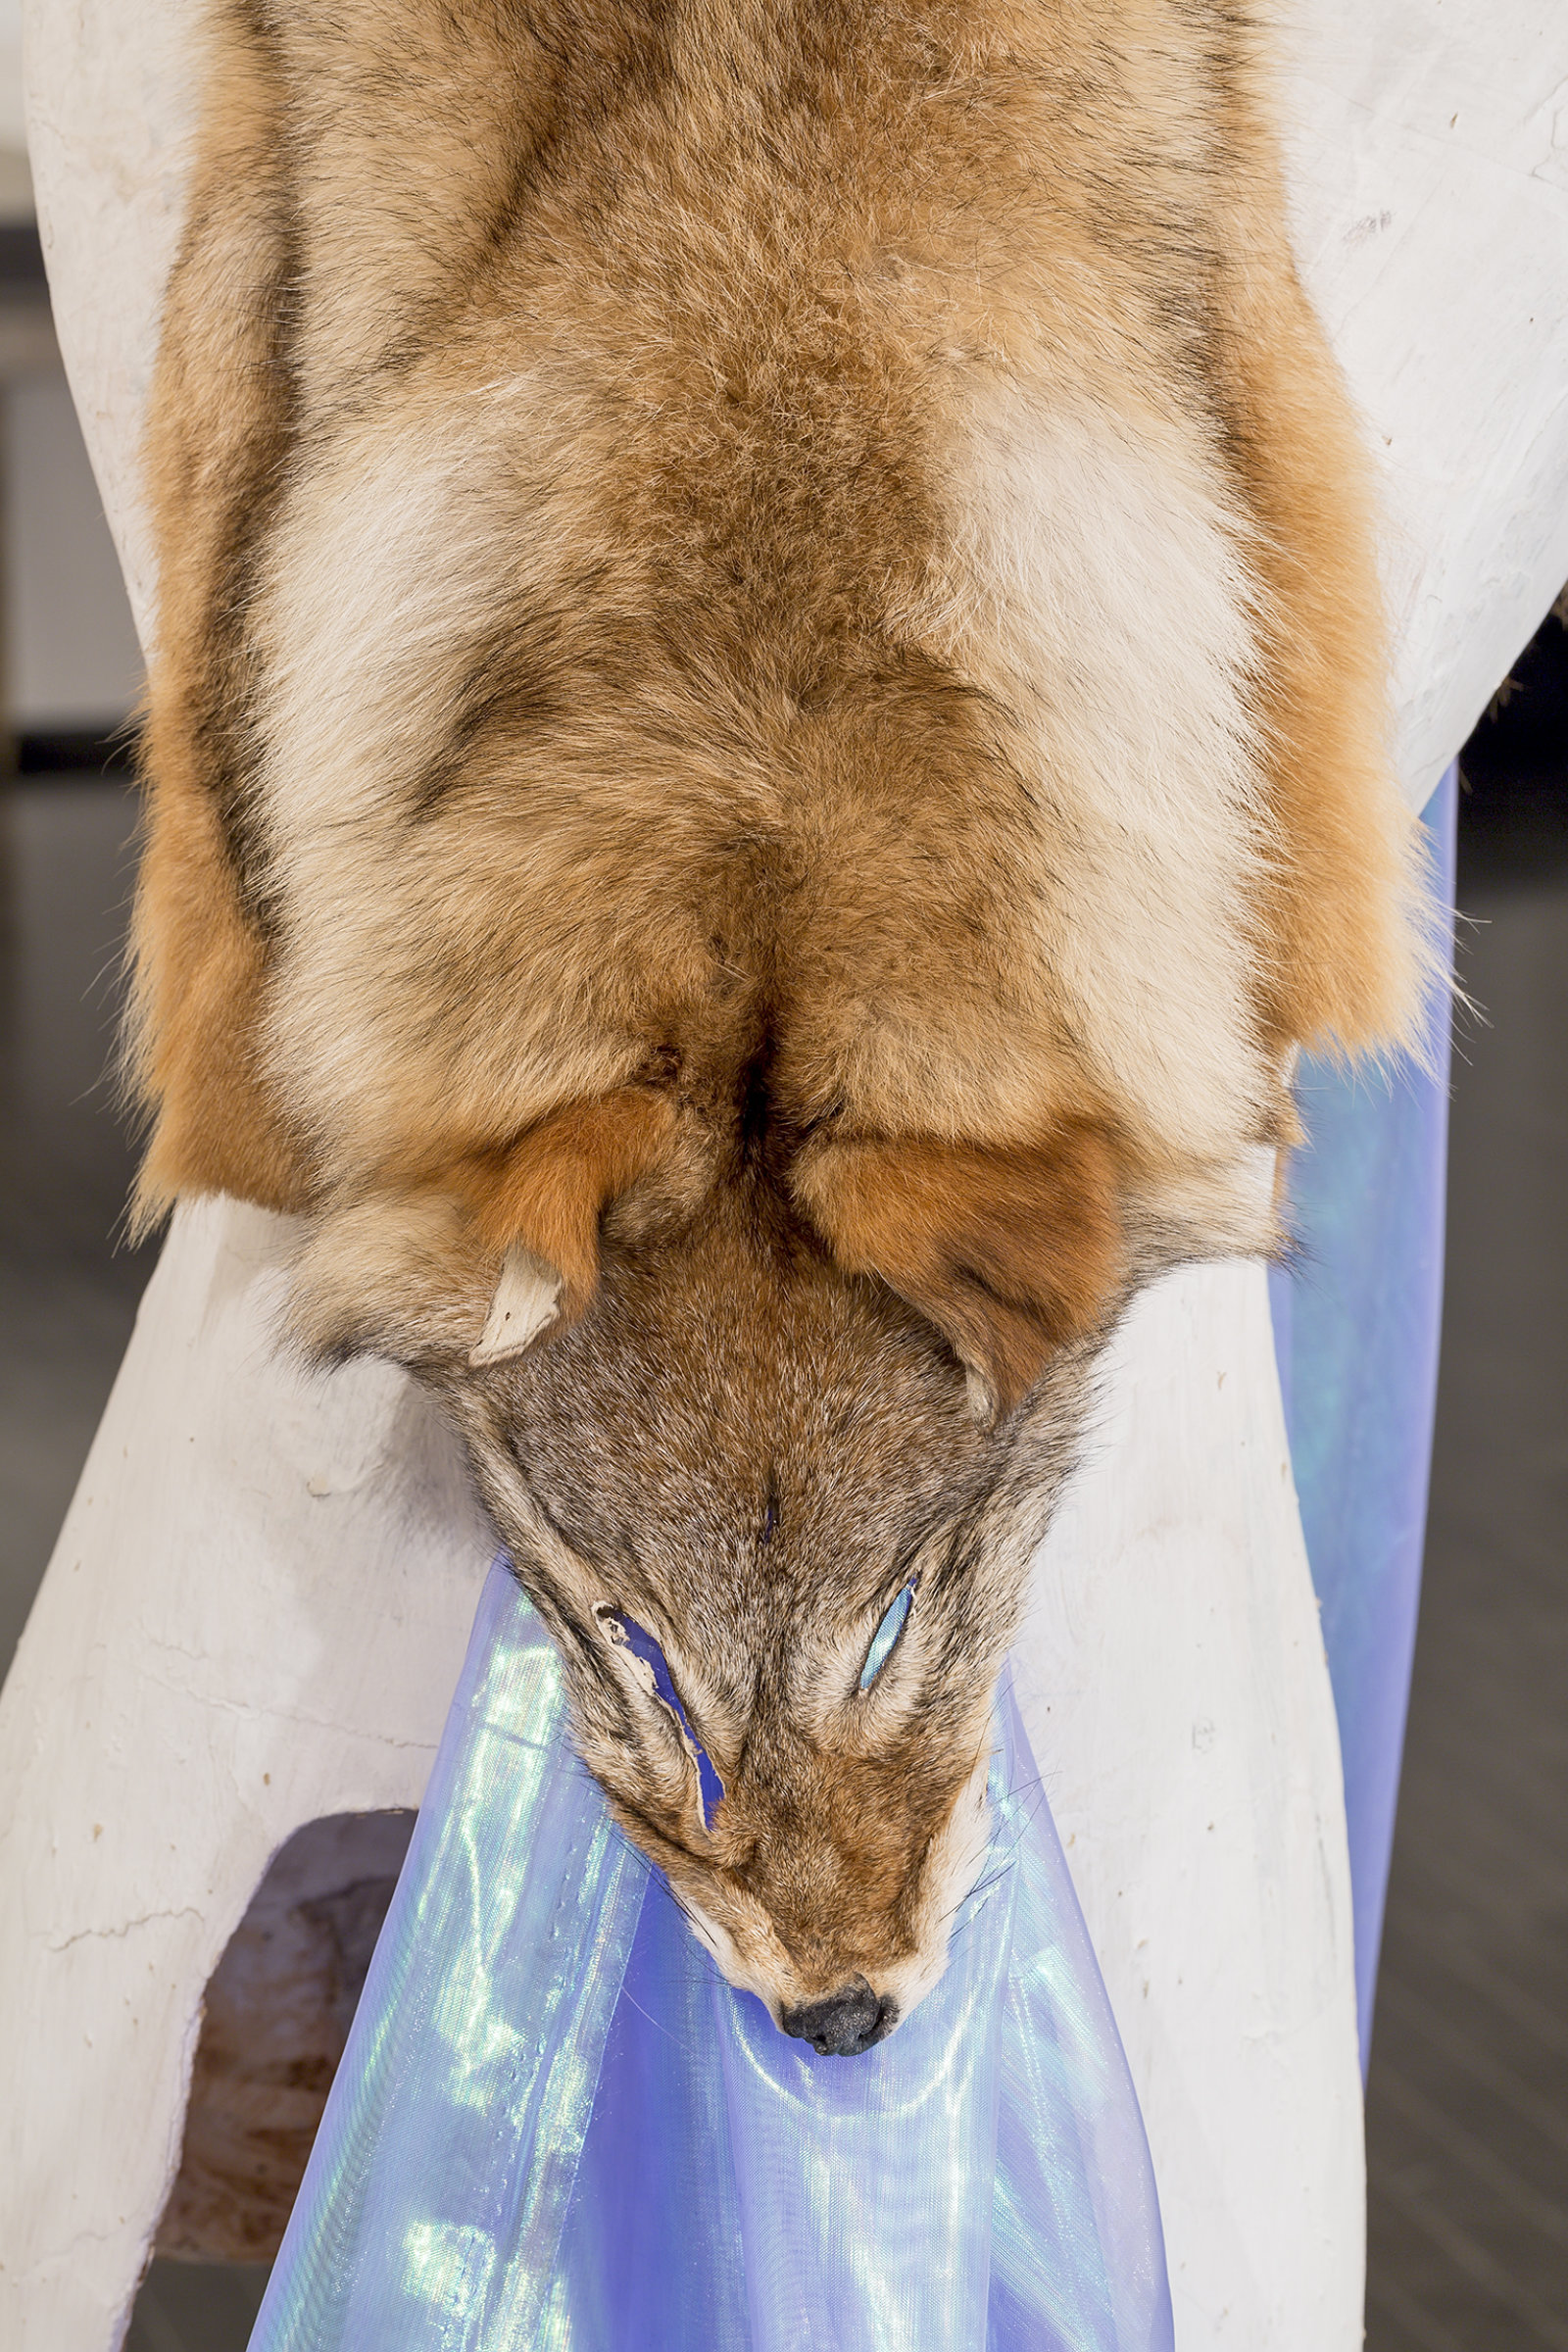 Duane Linklater, Beast of Burden (detail), 2016, coyote fur, dress form, gypsum, steel, wood, dimensions variable